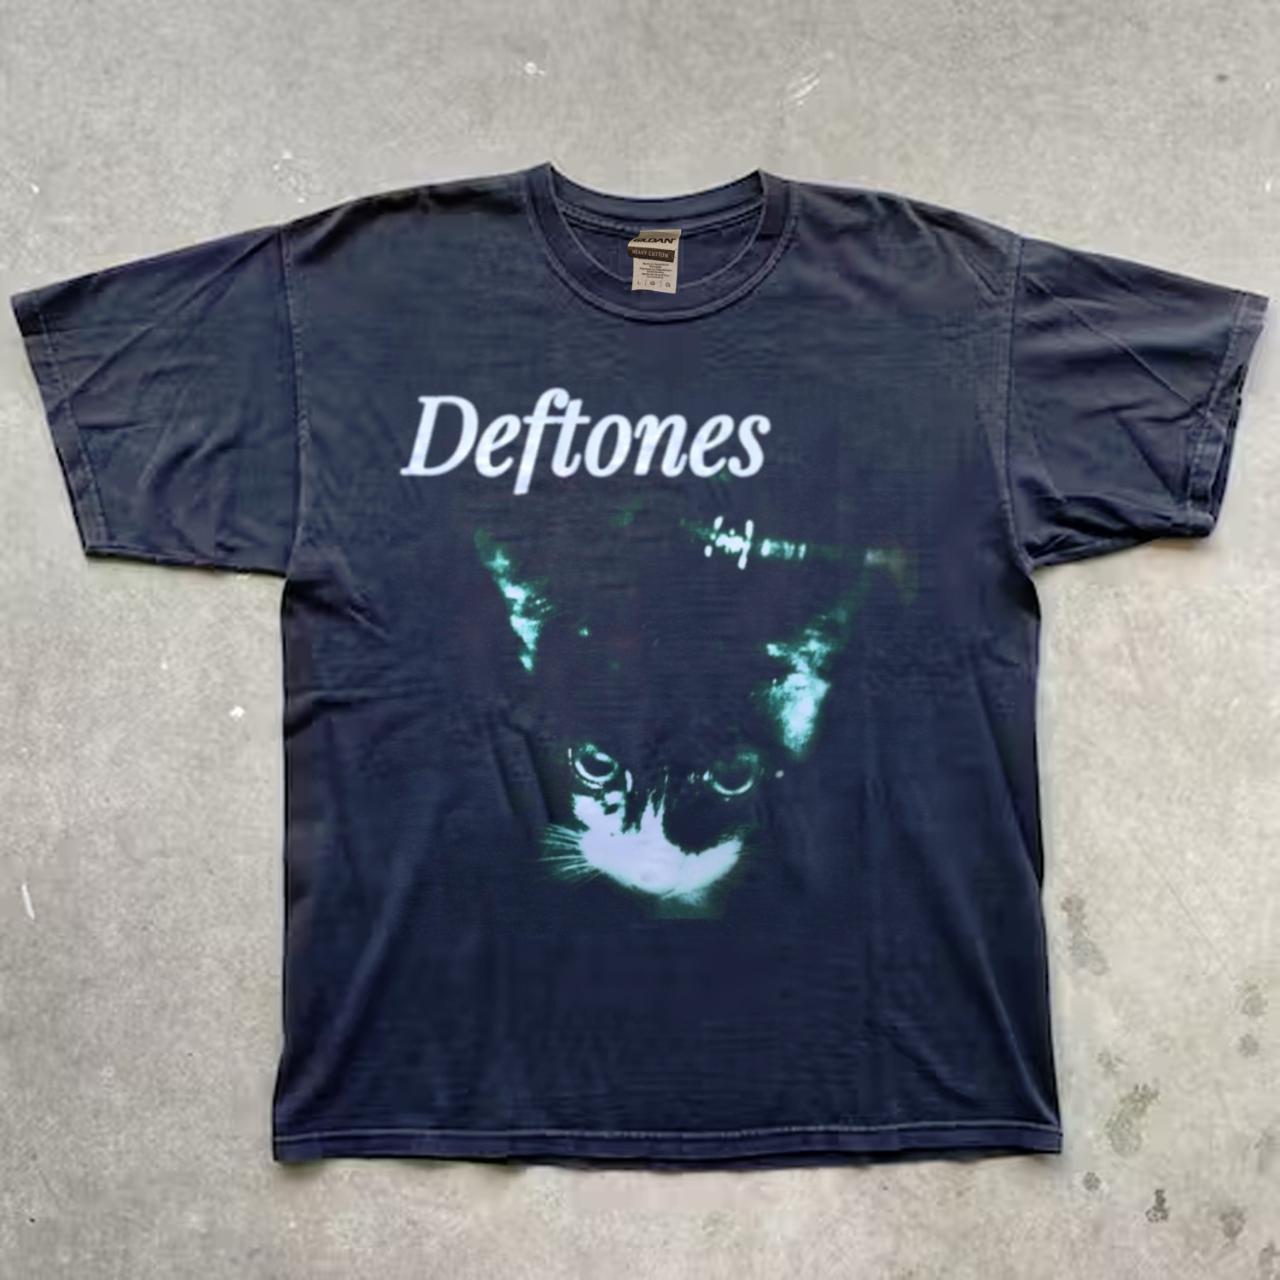 deftones - T Shirt , collor black, size L pit to pit